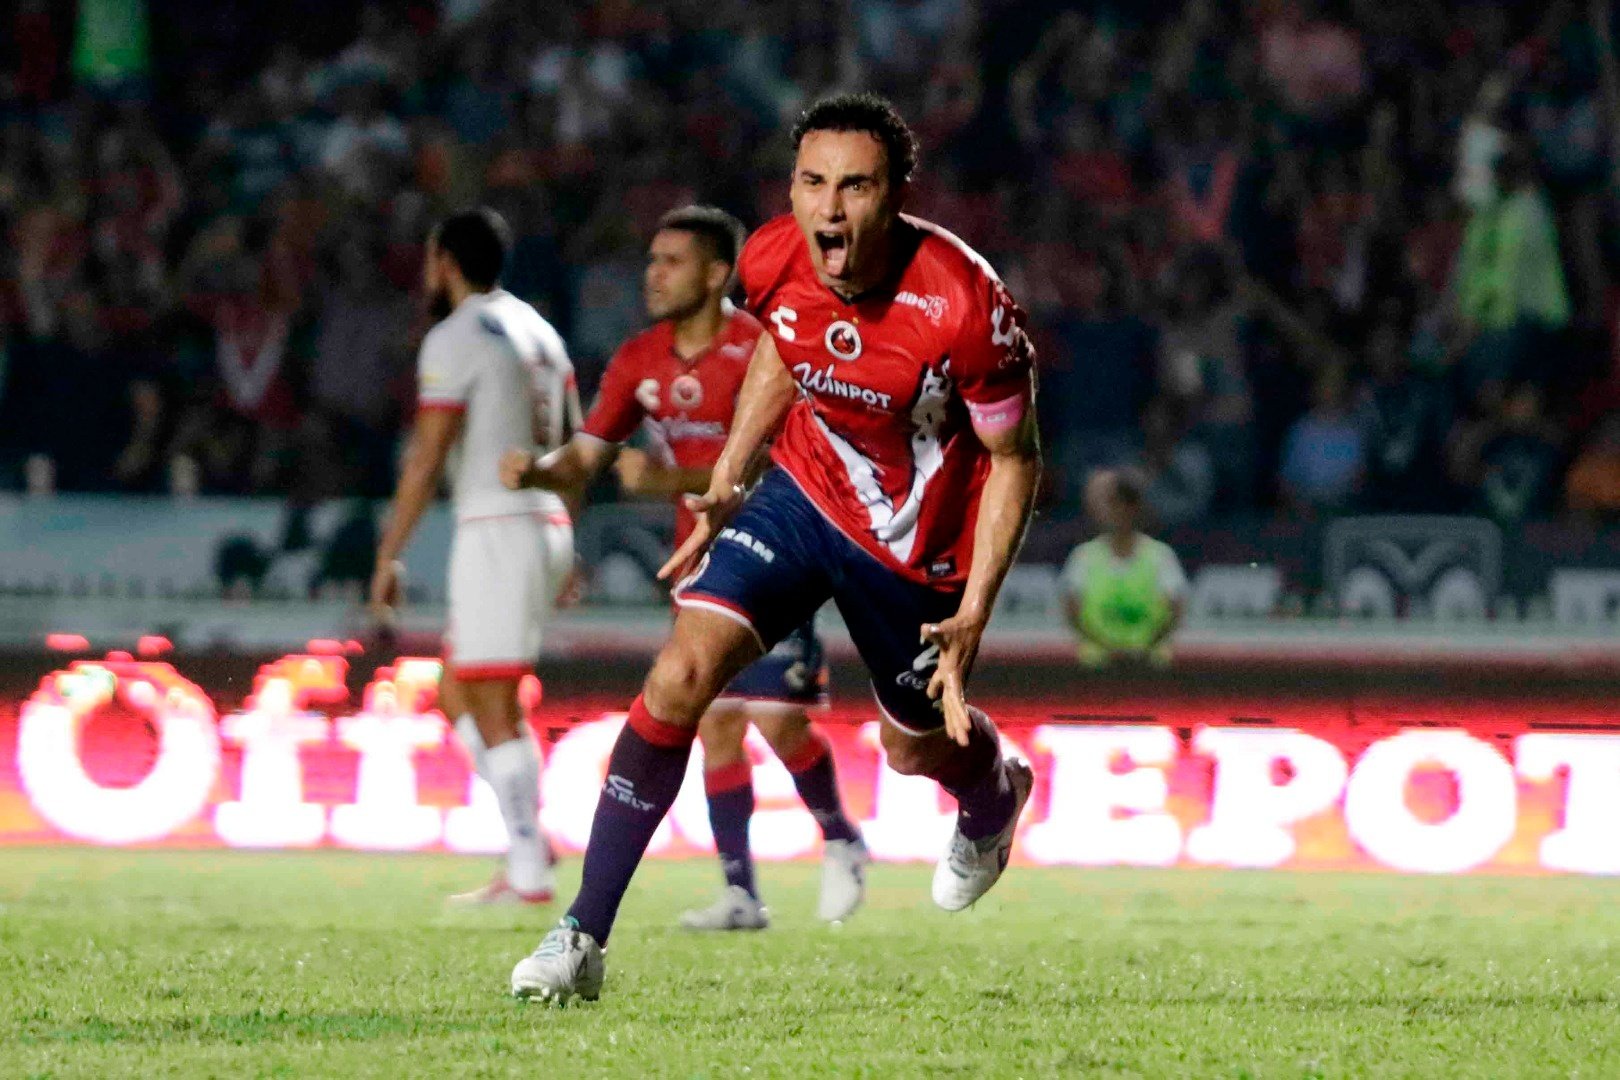 Veracruz se impone con facilidad en la Copa de México. ClubTiburonesRojos